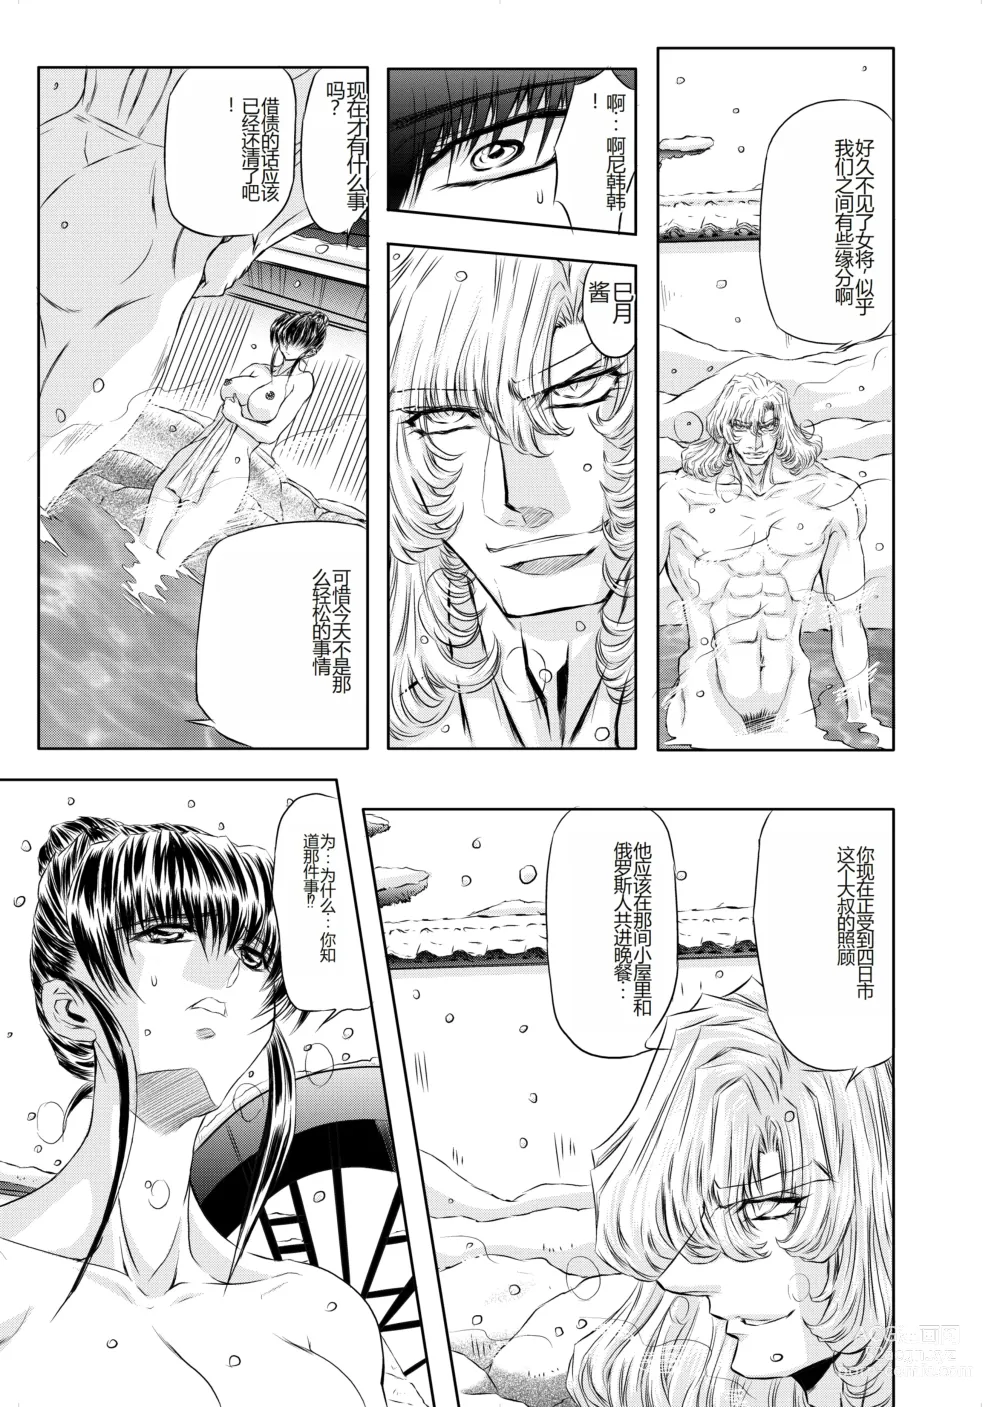 Page 6 of doujinshi Target 05